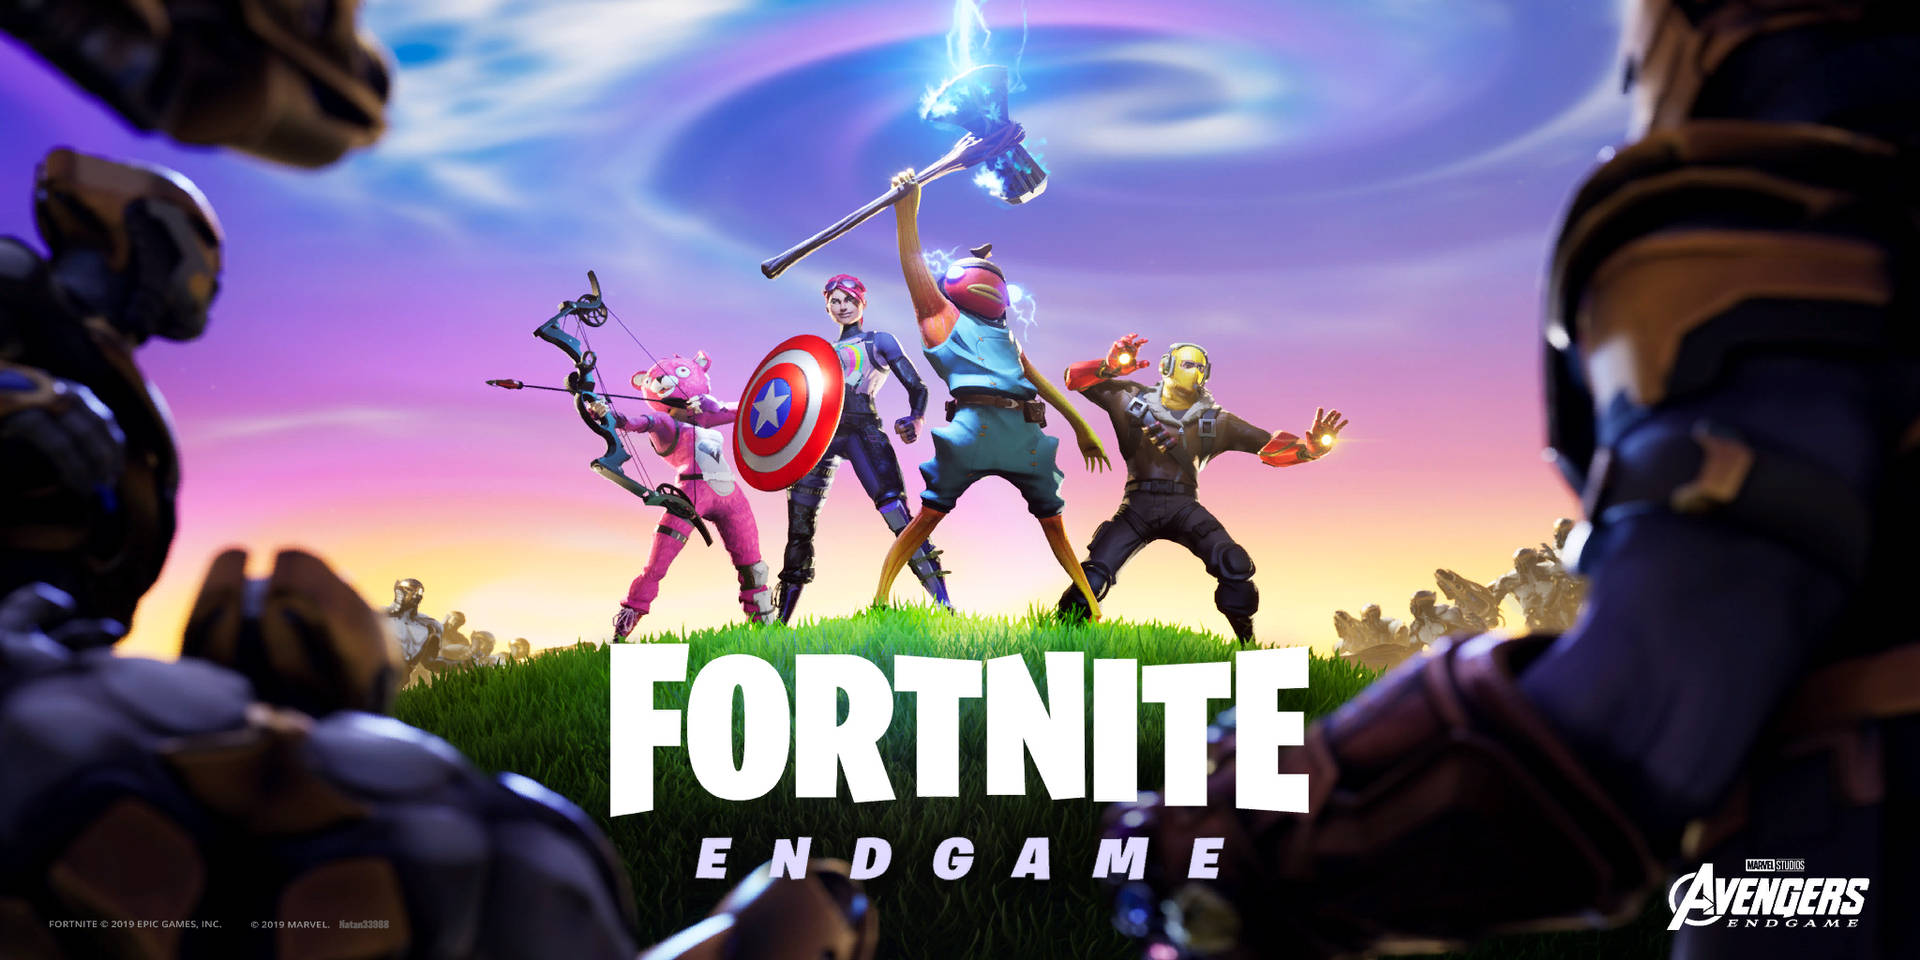 Fortnite Endgame Poster Background